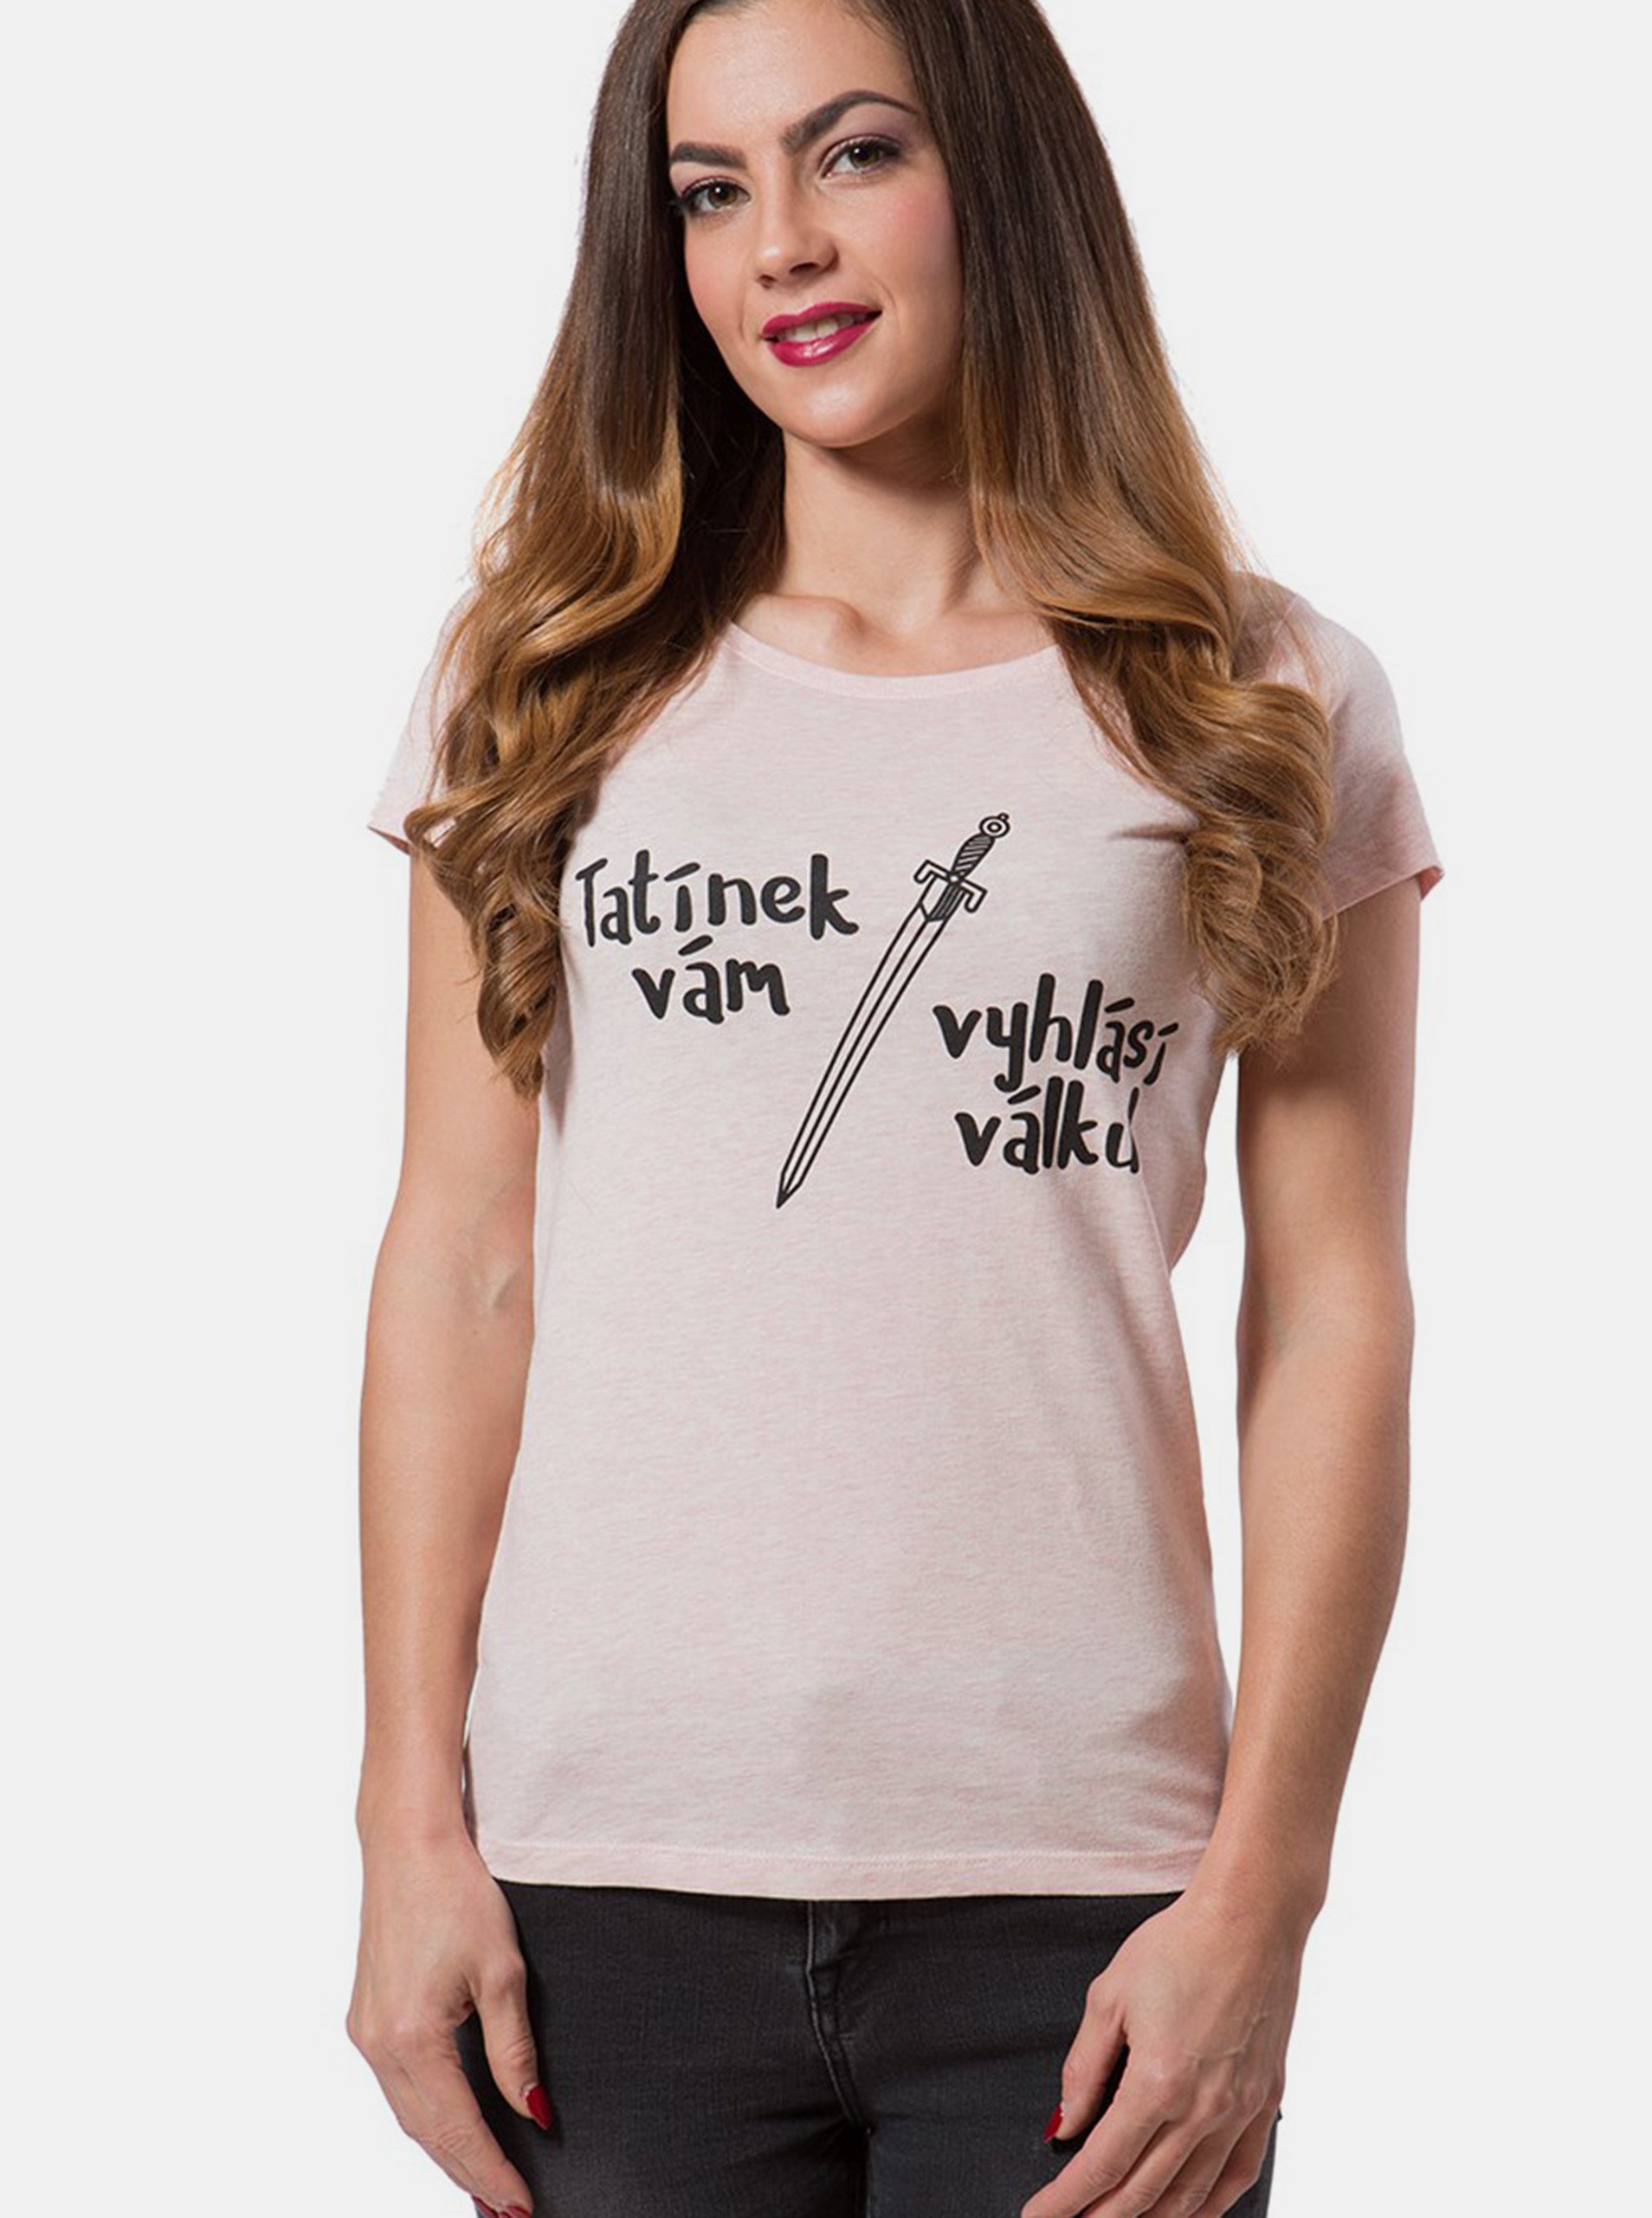 Lacno Differenta Design púdrové dámske tričko Tatínek vám vyhlásí válku